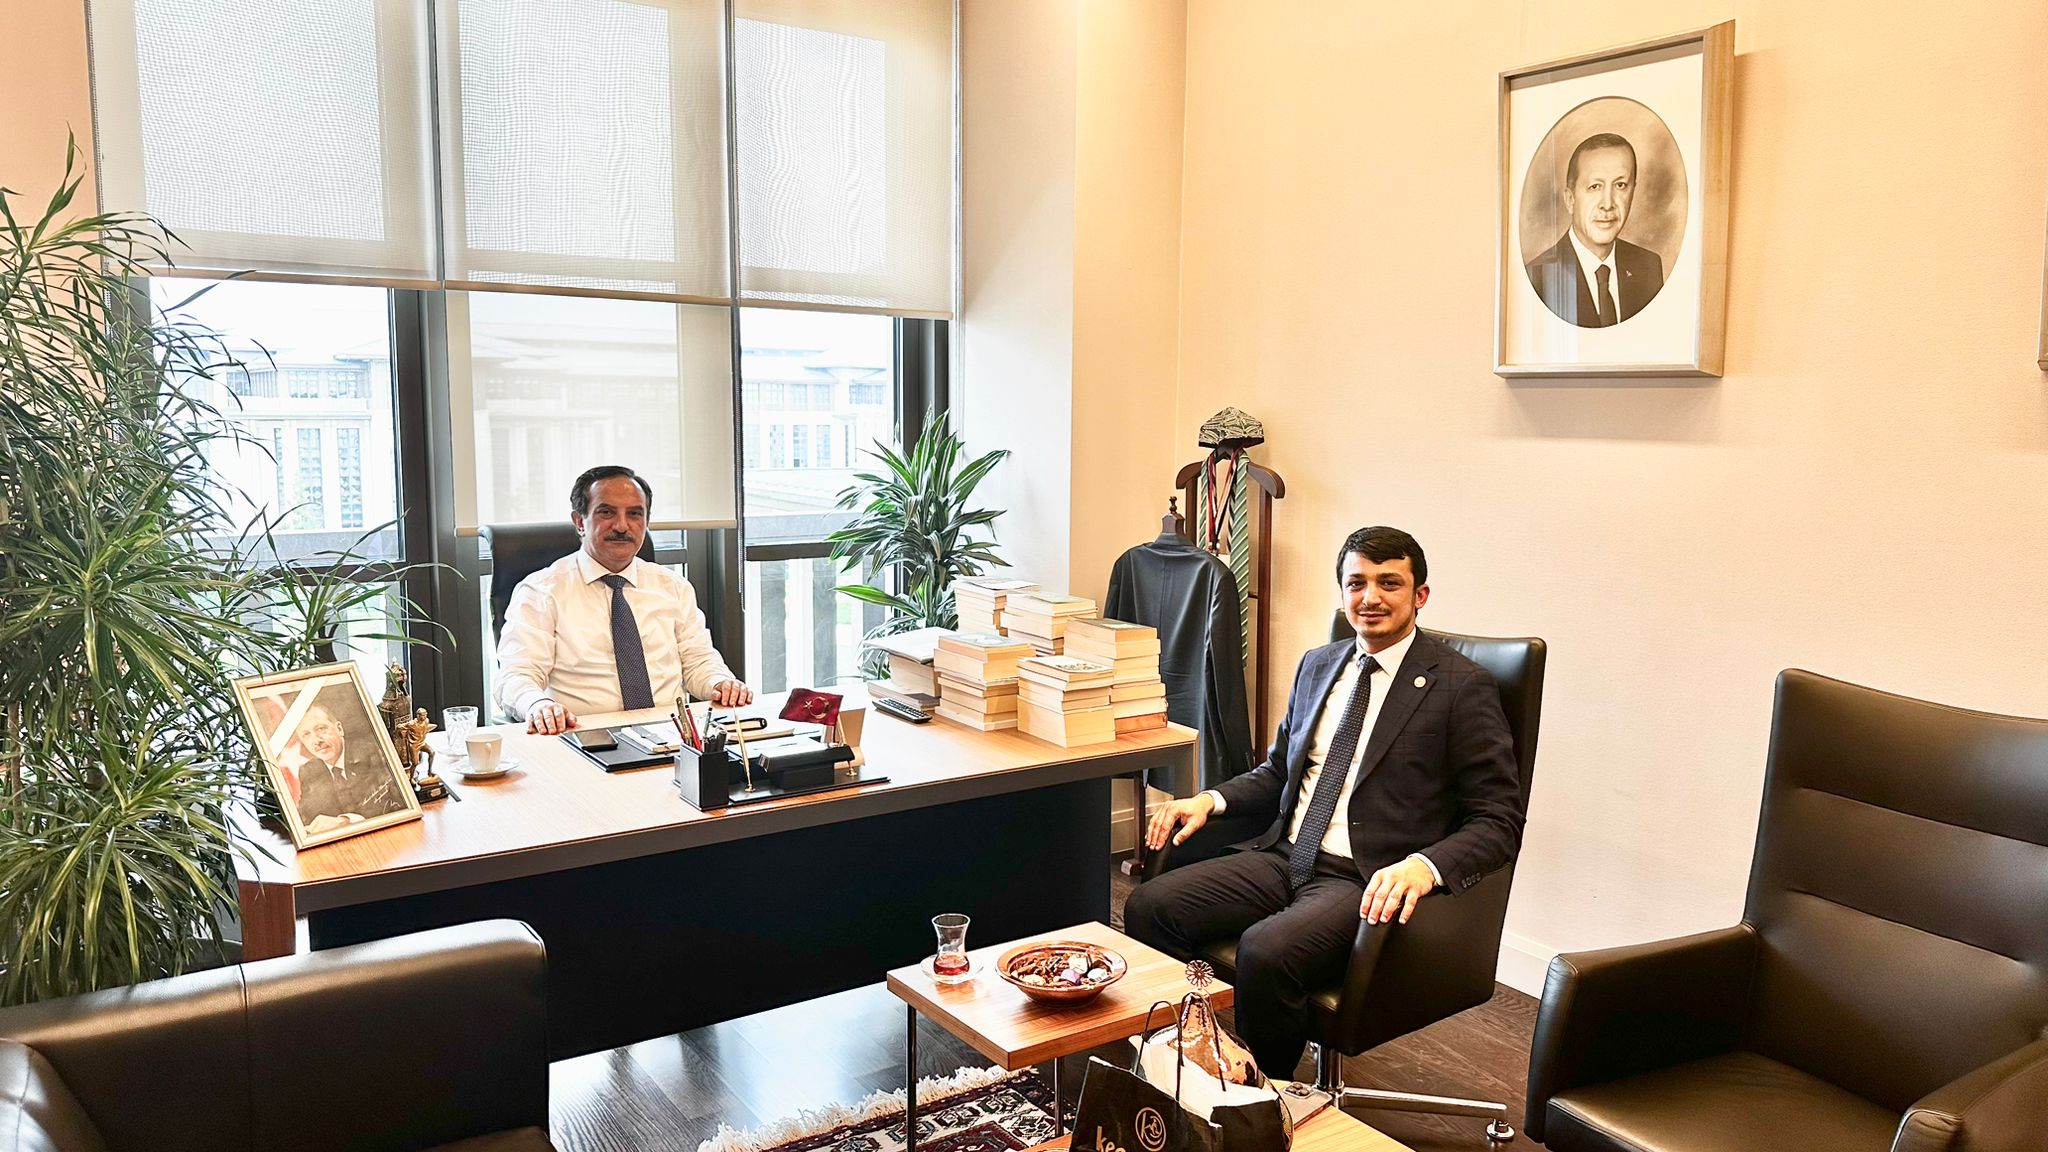 TÜMKİAD Edirne Başkanı Kurum’dan Cumhurbaşkanı Başdanışmanı Ahmet Selim Köroğlu’na ziyaret